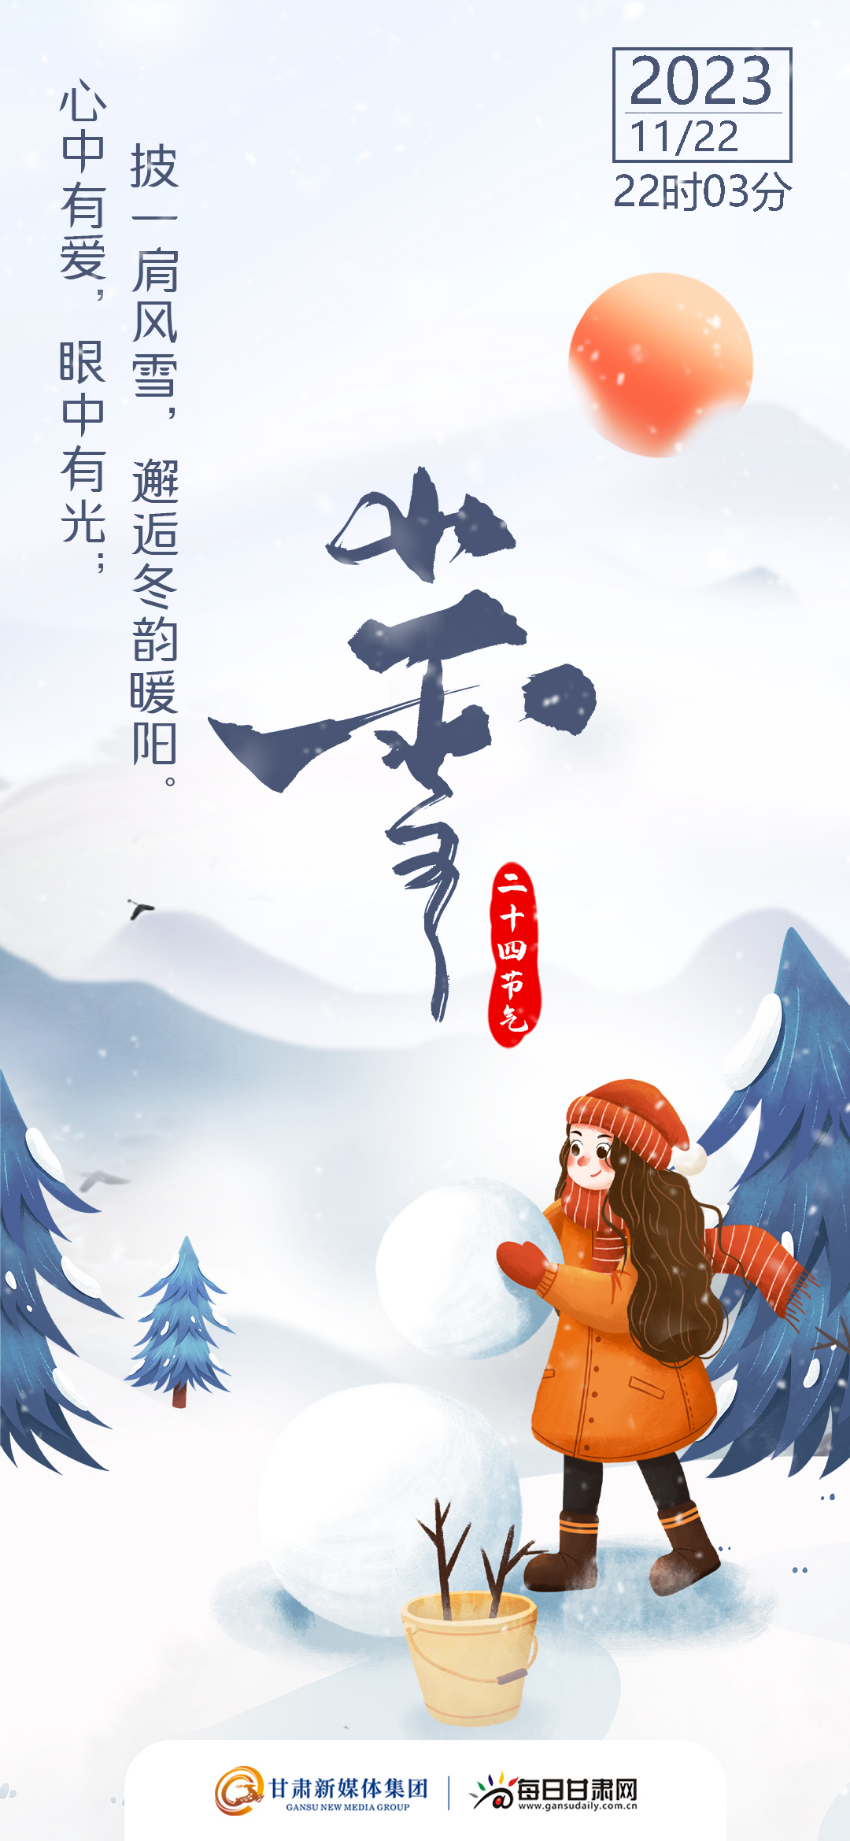 【微海报】二十四节气・小雪